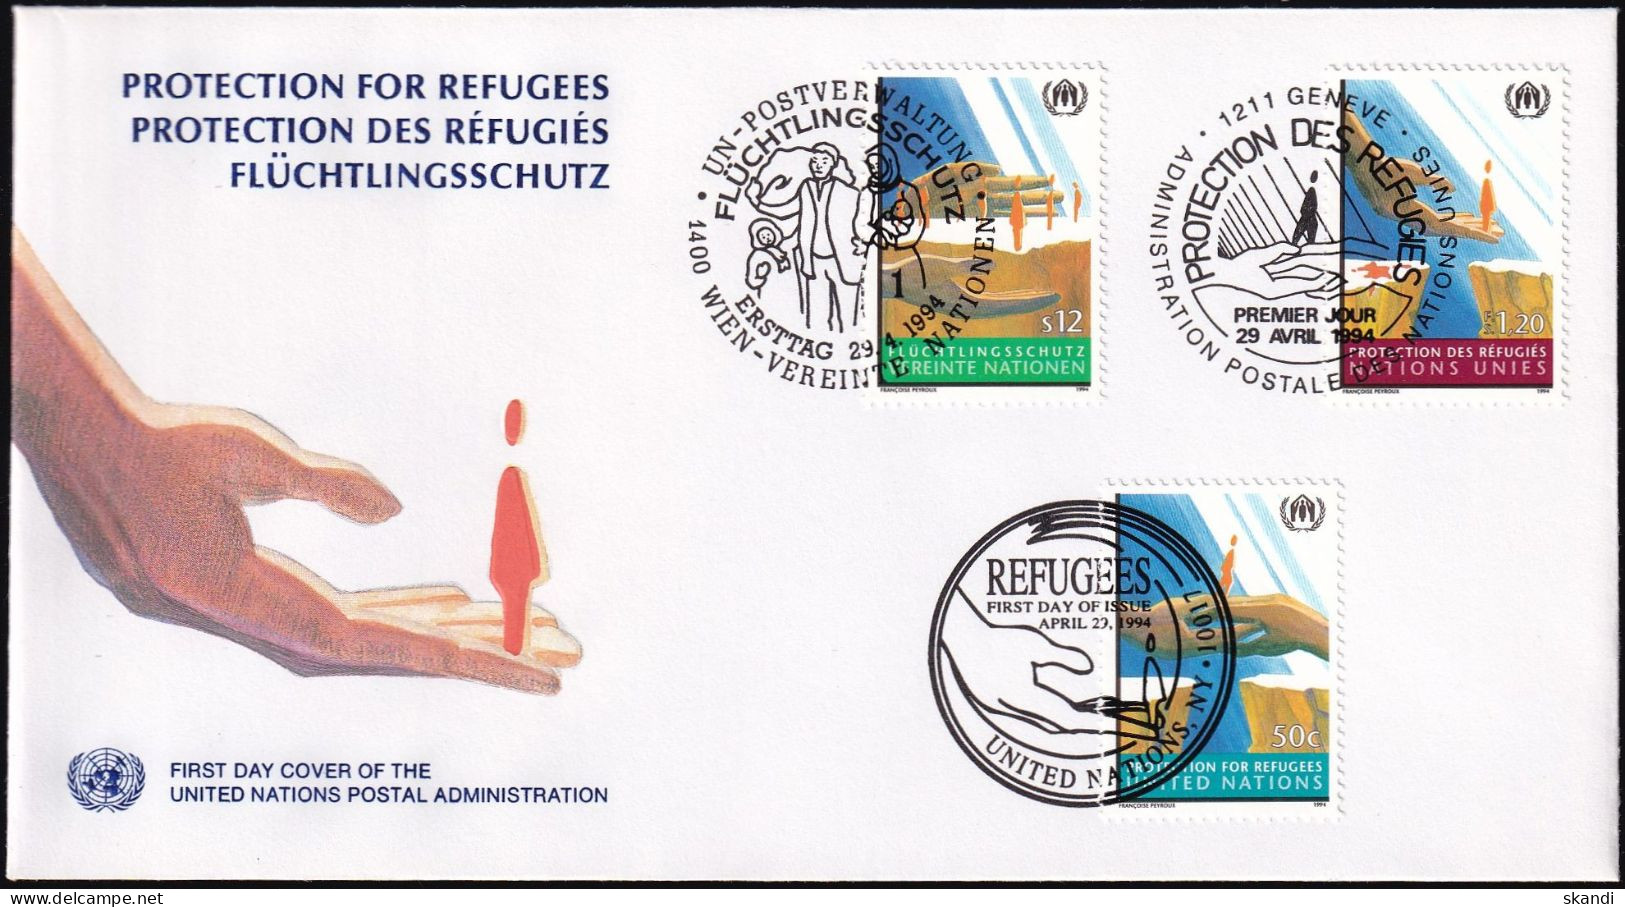 UNO NEW YORK - WIEN - GENF 1994 TRIO-FDC Flüchtlingsschutz - New York/Geneva/Vienna Joint Issues